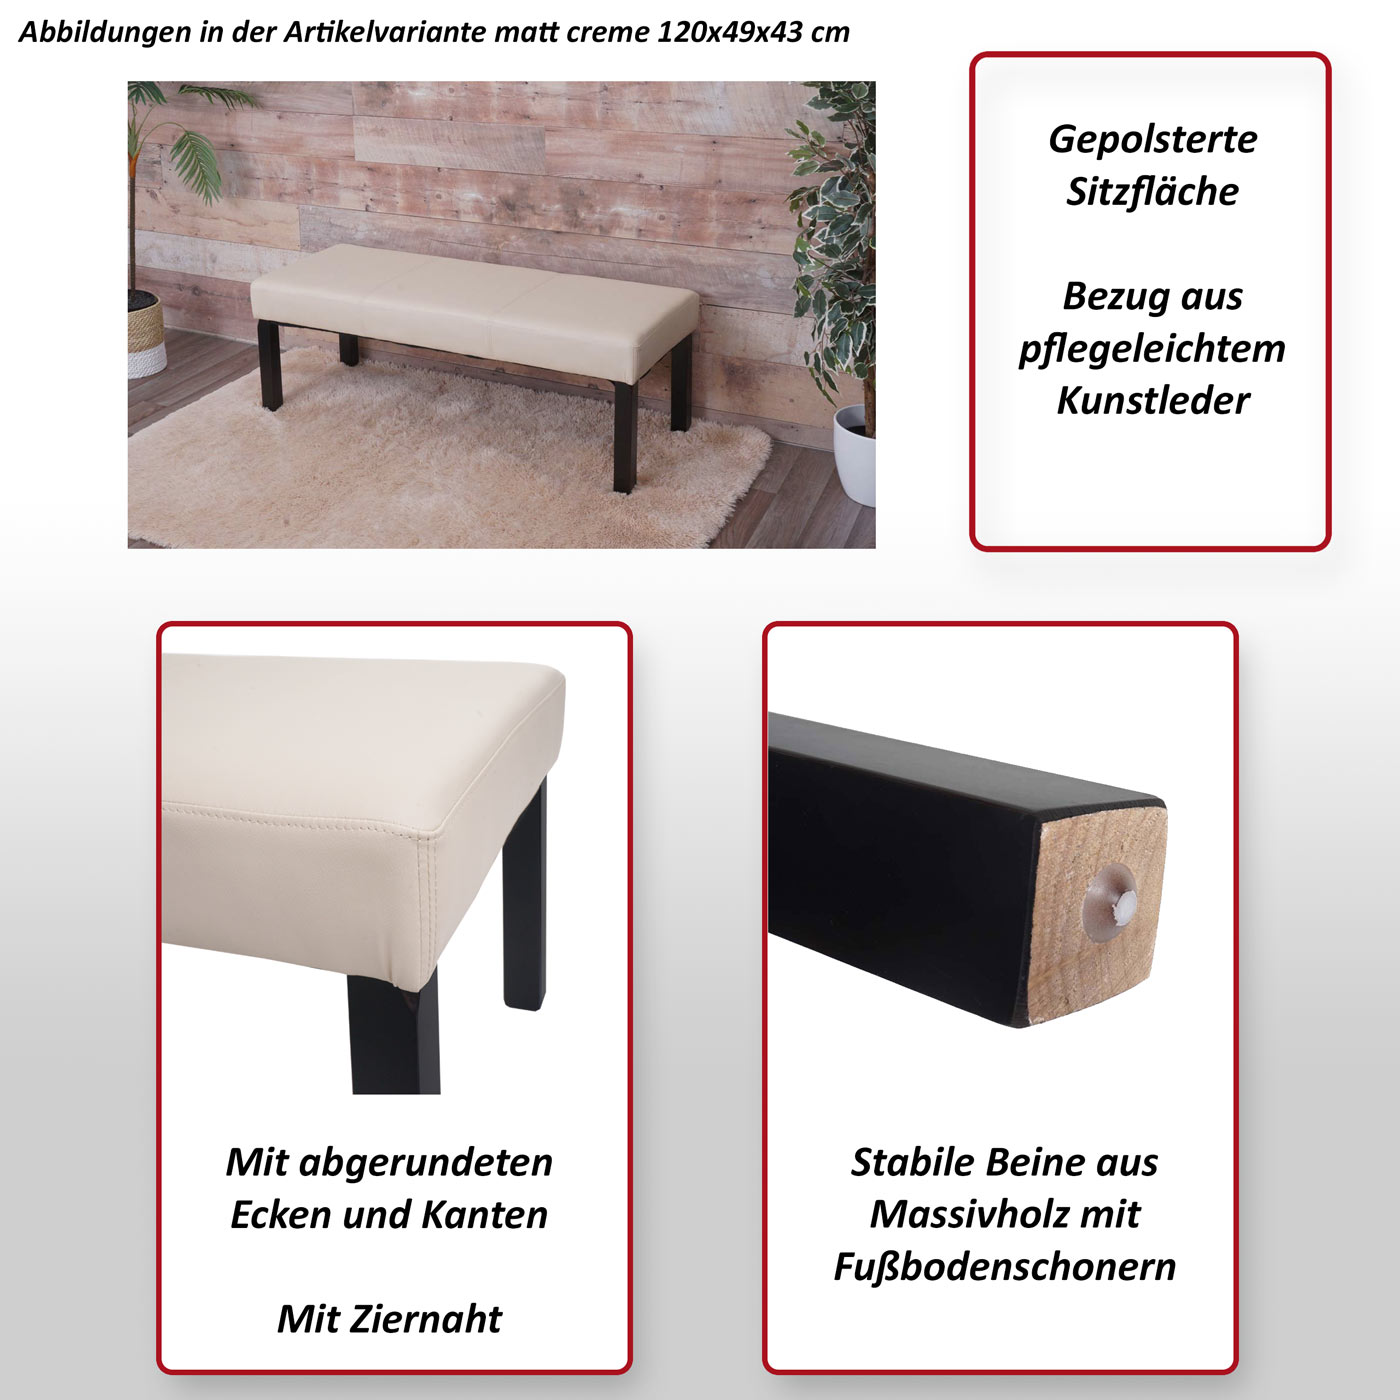 Sitzbank Polsterbank Bank M37 Kunstleder ~ 120x43x49 cm creme, dunkle Beine  von Heute-Wohnen